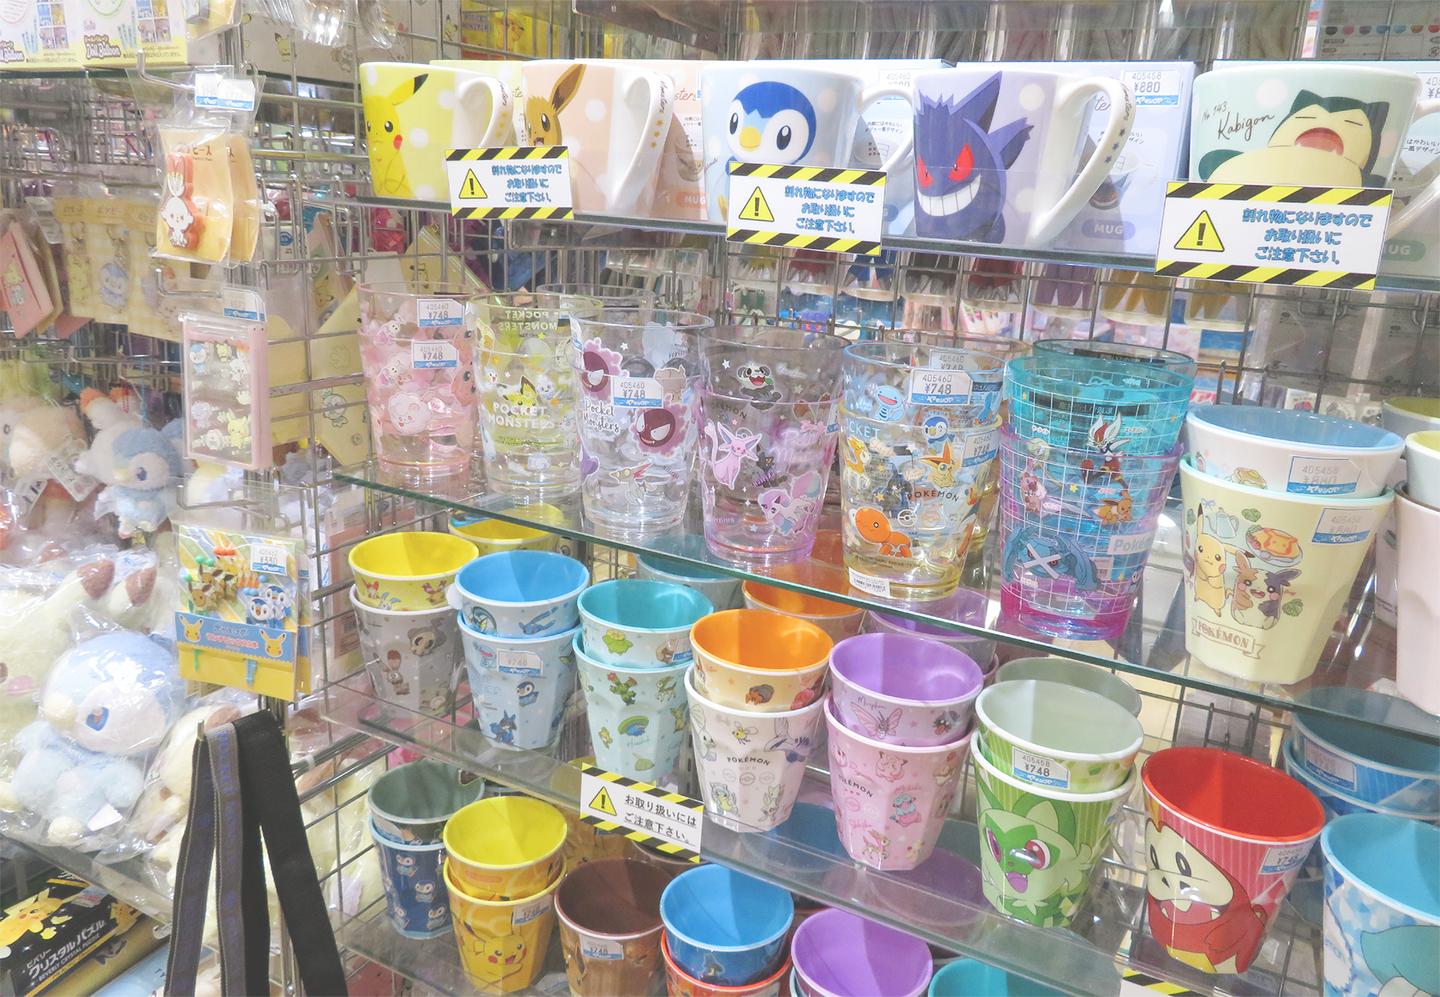 Images of POKEMON merchandise sold at YAMASHIROYA3